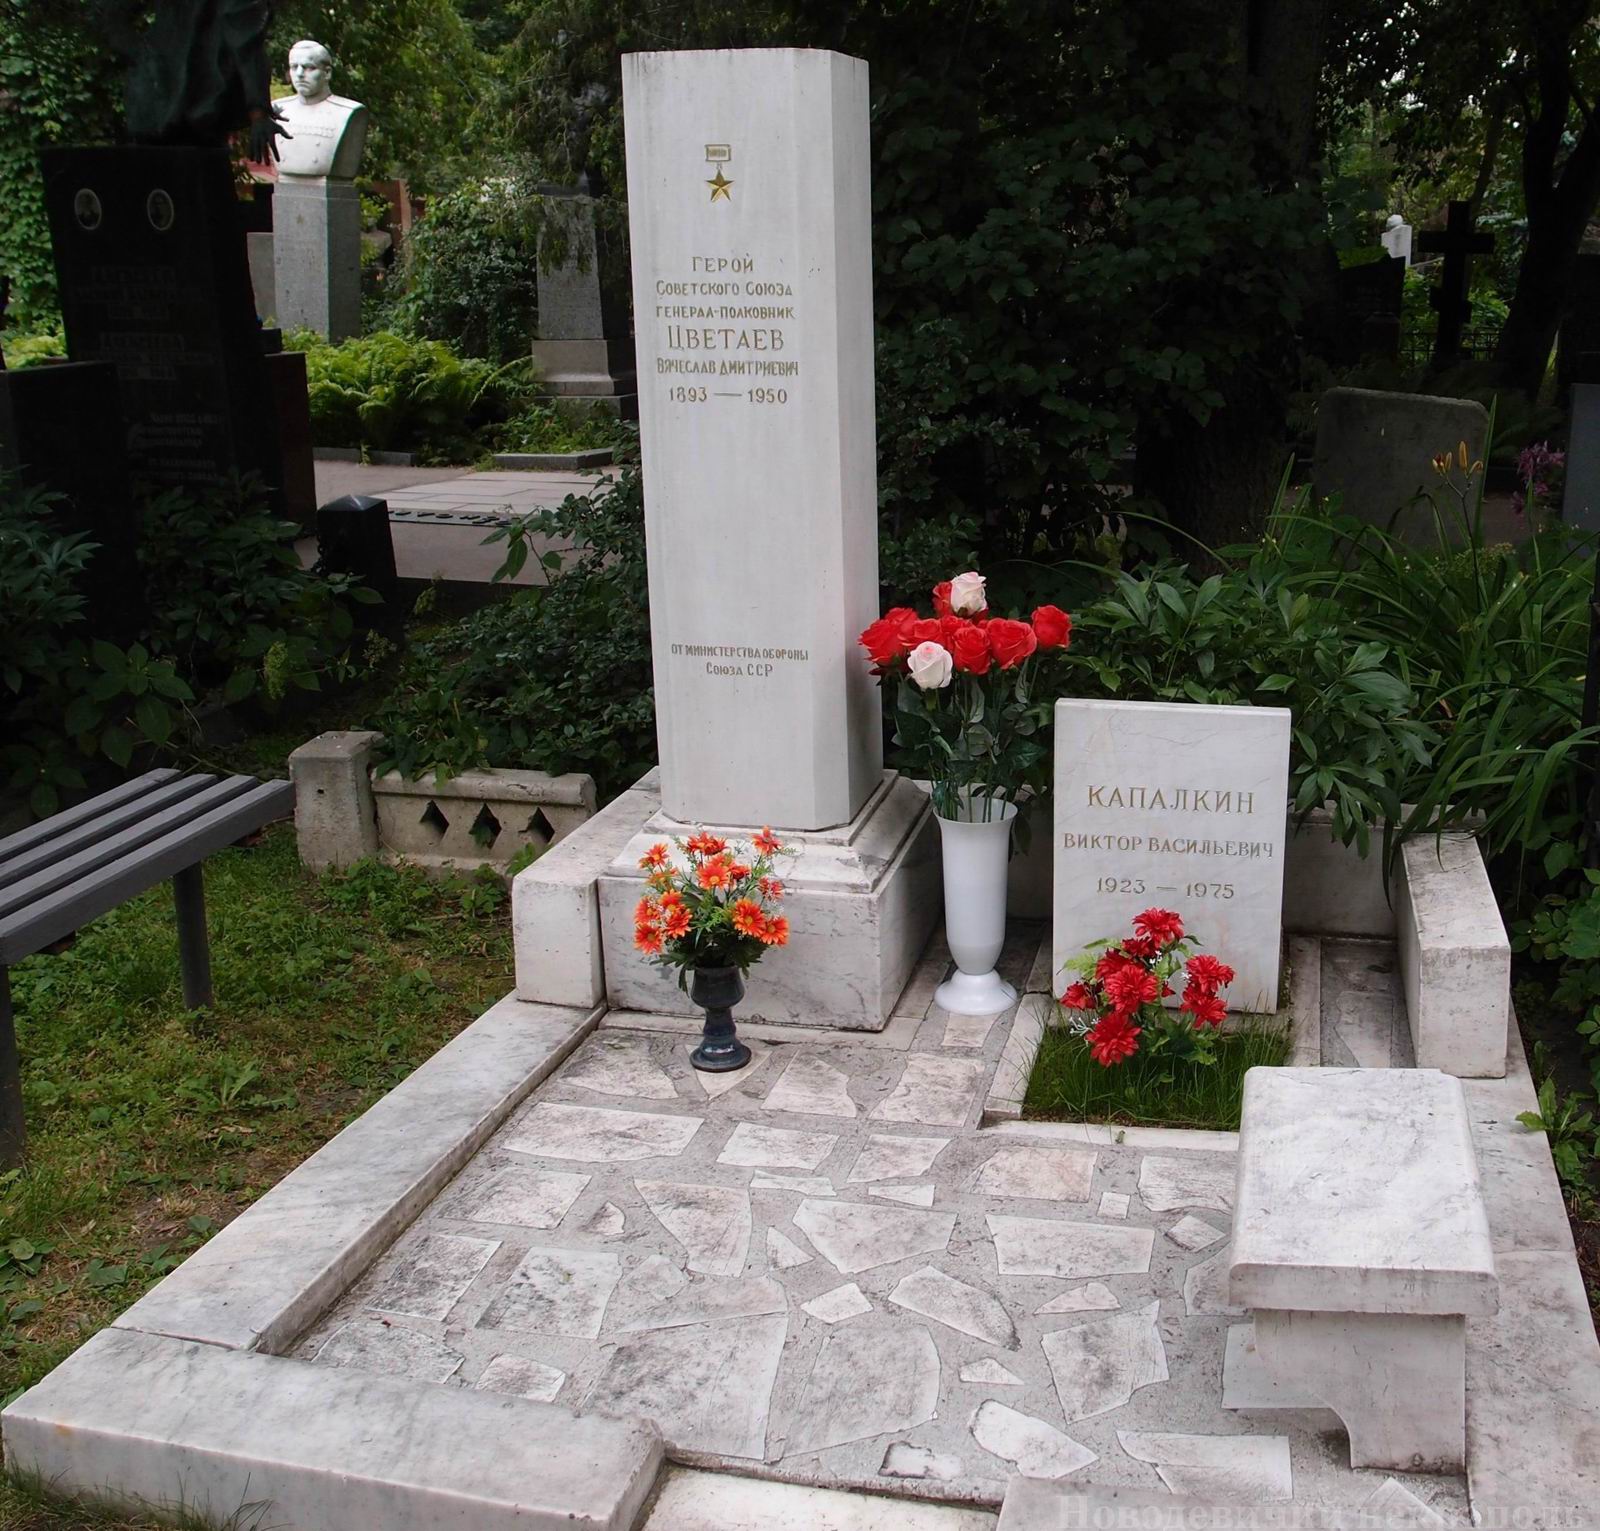 Памятник на могиле Цветаева В.Д. (1893-1950), на Новодевичьем кладбище (4-15-8). Нажмите левую кнопку мыши, чтобы увидеть памятник крупно.